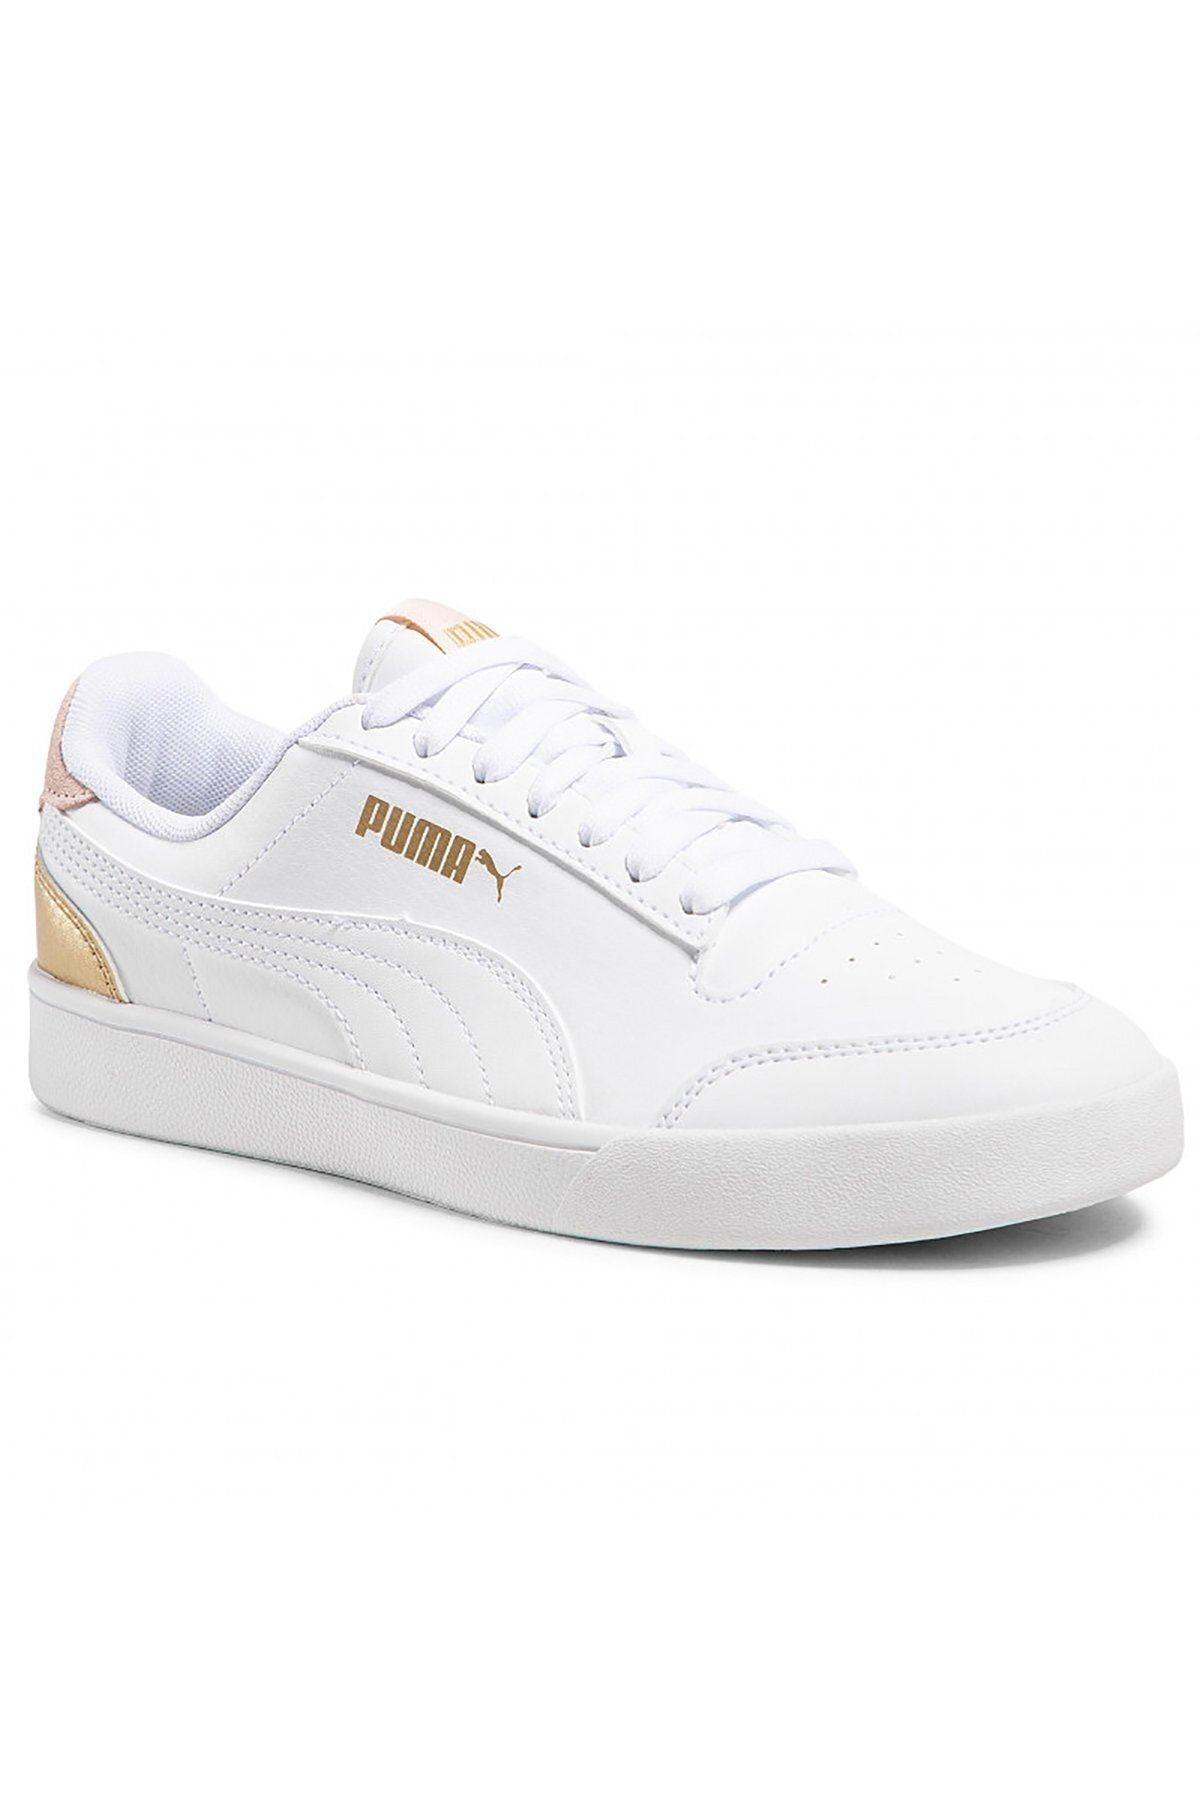 Puma SHUFFLE Beyaz Kadın Sneaker Ayakkabı 101085434